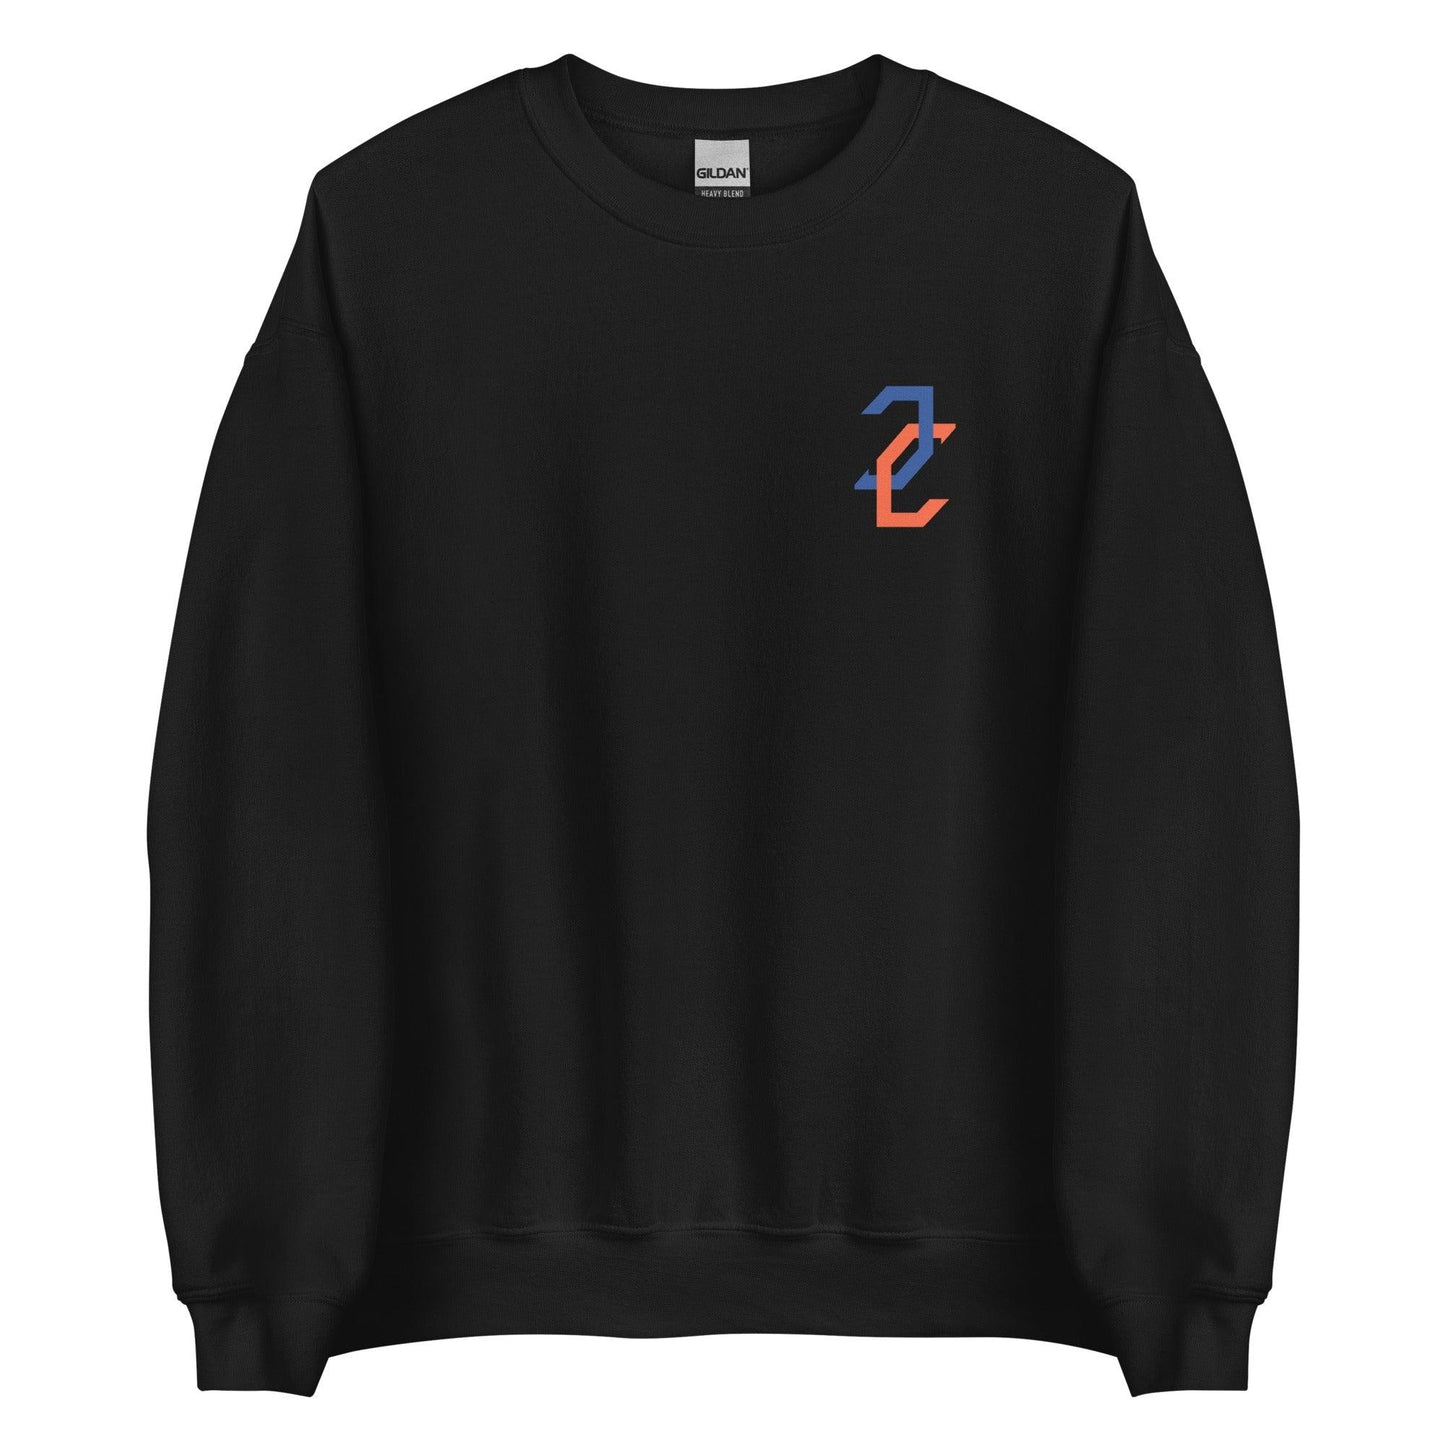 Jordan Castell "Essential" Sweatshirt - Fan Arch